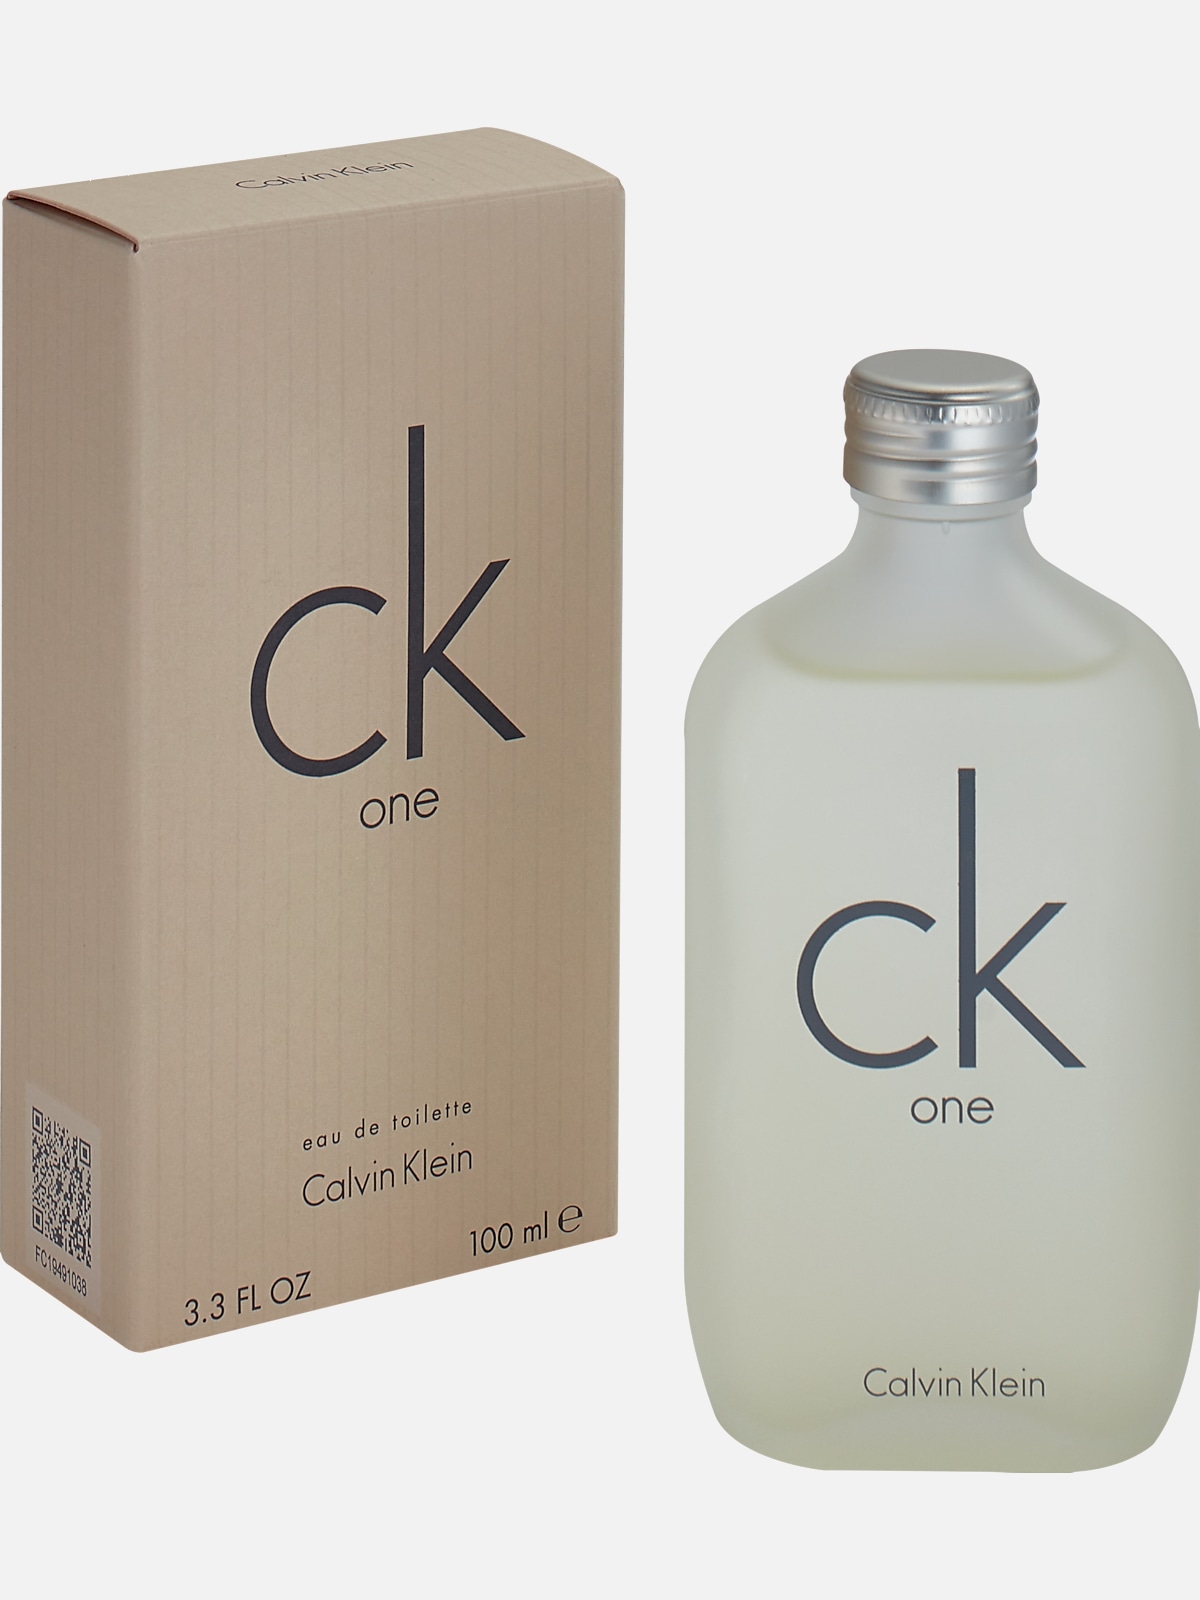 Berg Vesuvius Caius Grillig Calvin Klein One Eau de Toilette3.4 oz. | Gifts| Men's Wearhouse